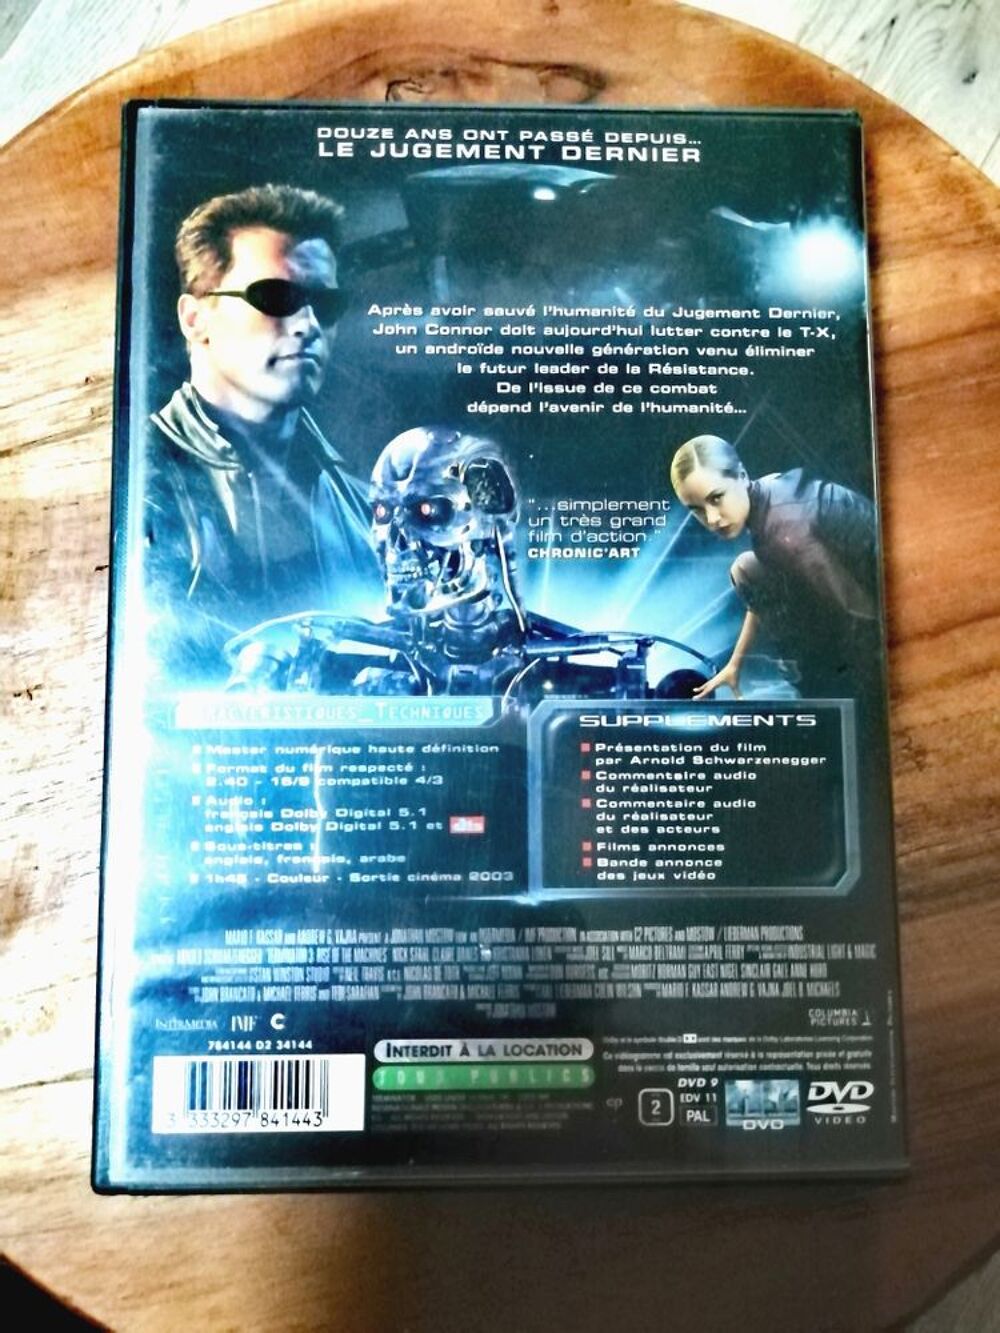 Terminator 3 Le Soul&egrave;vement des Machines Dvd Arnold Schwarzenegger DVD et blu-ray